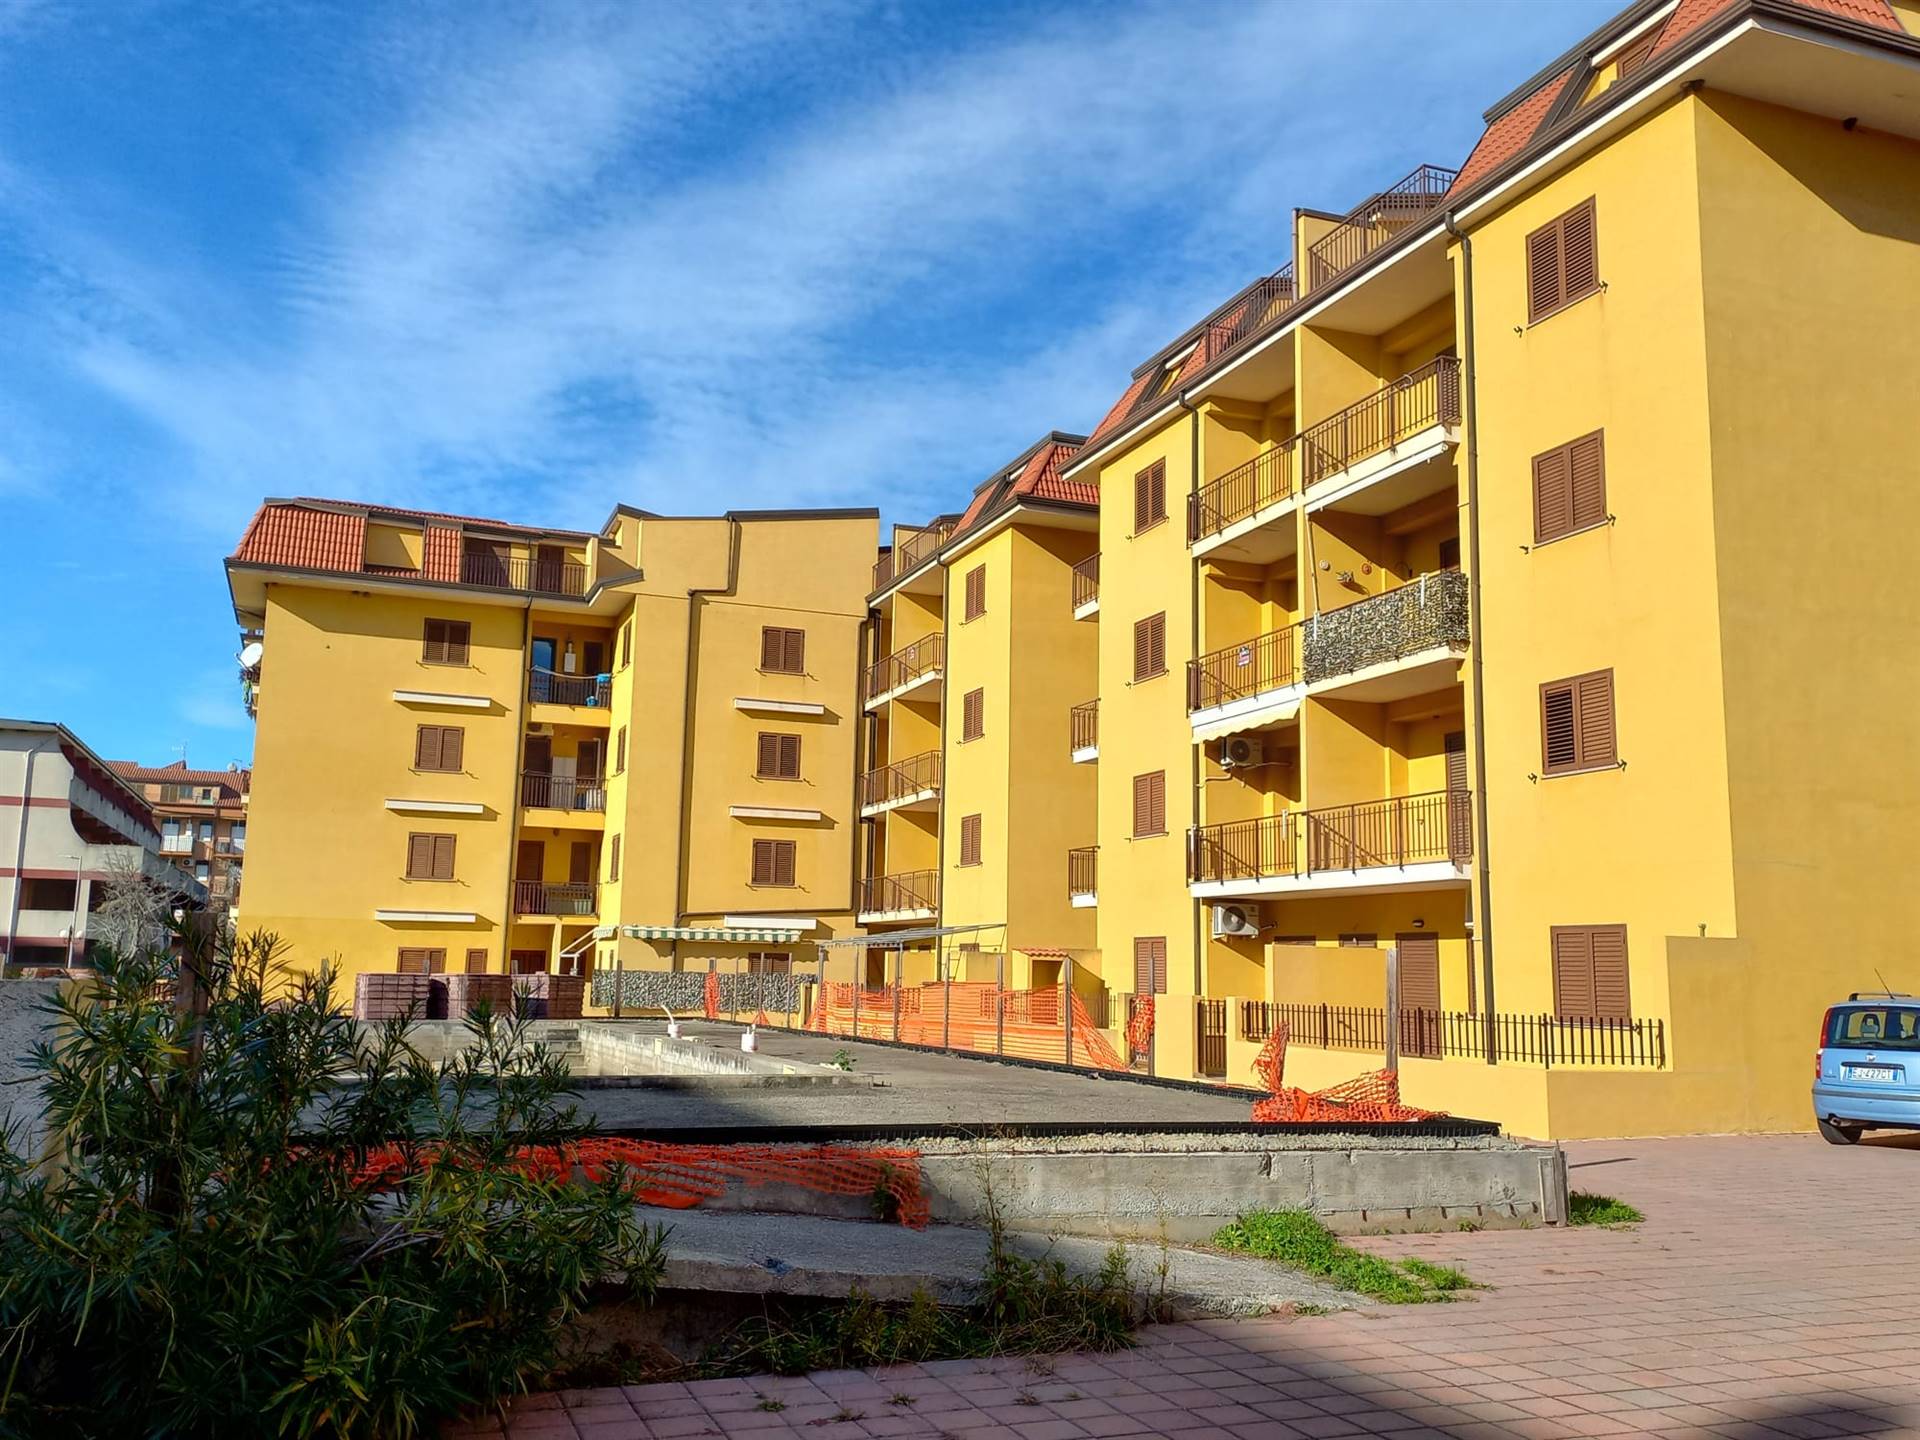 Appartamento in vendita a Nocera Terinese, 3 locali, zona Località: MARINA DI NOCERA TERINESE, prezzo € 67.000 | CambioCasa.it